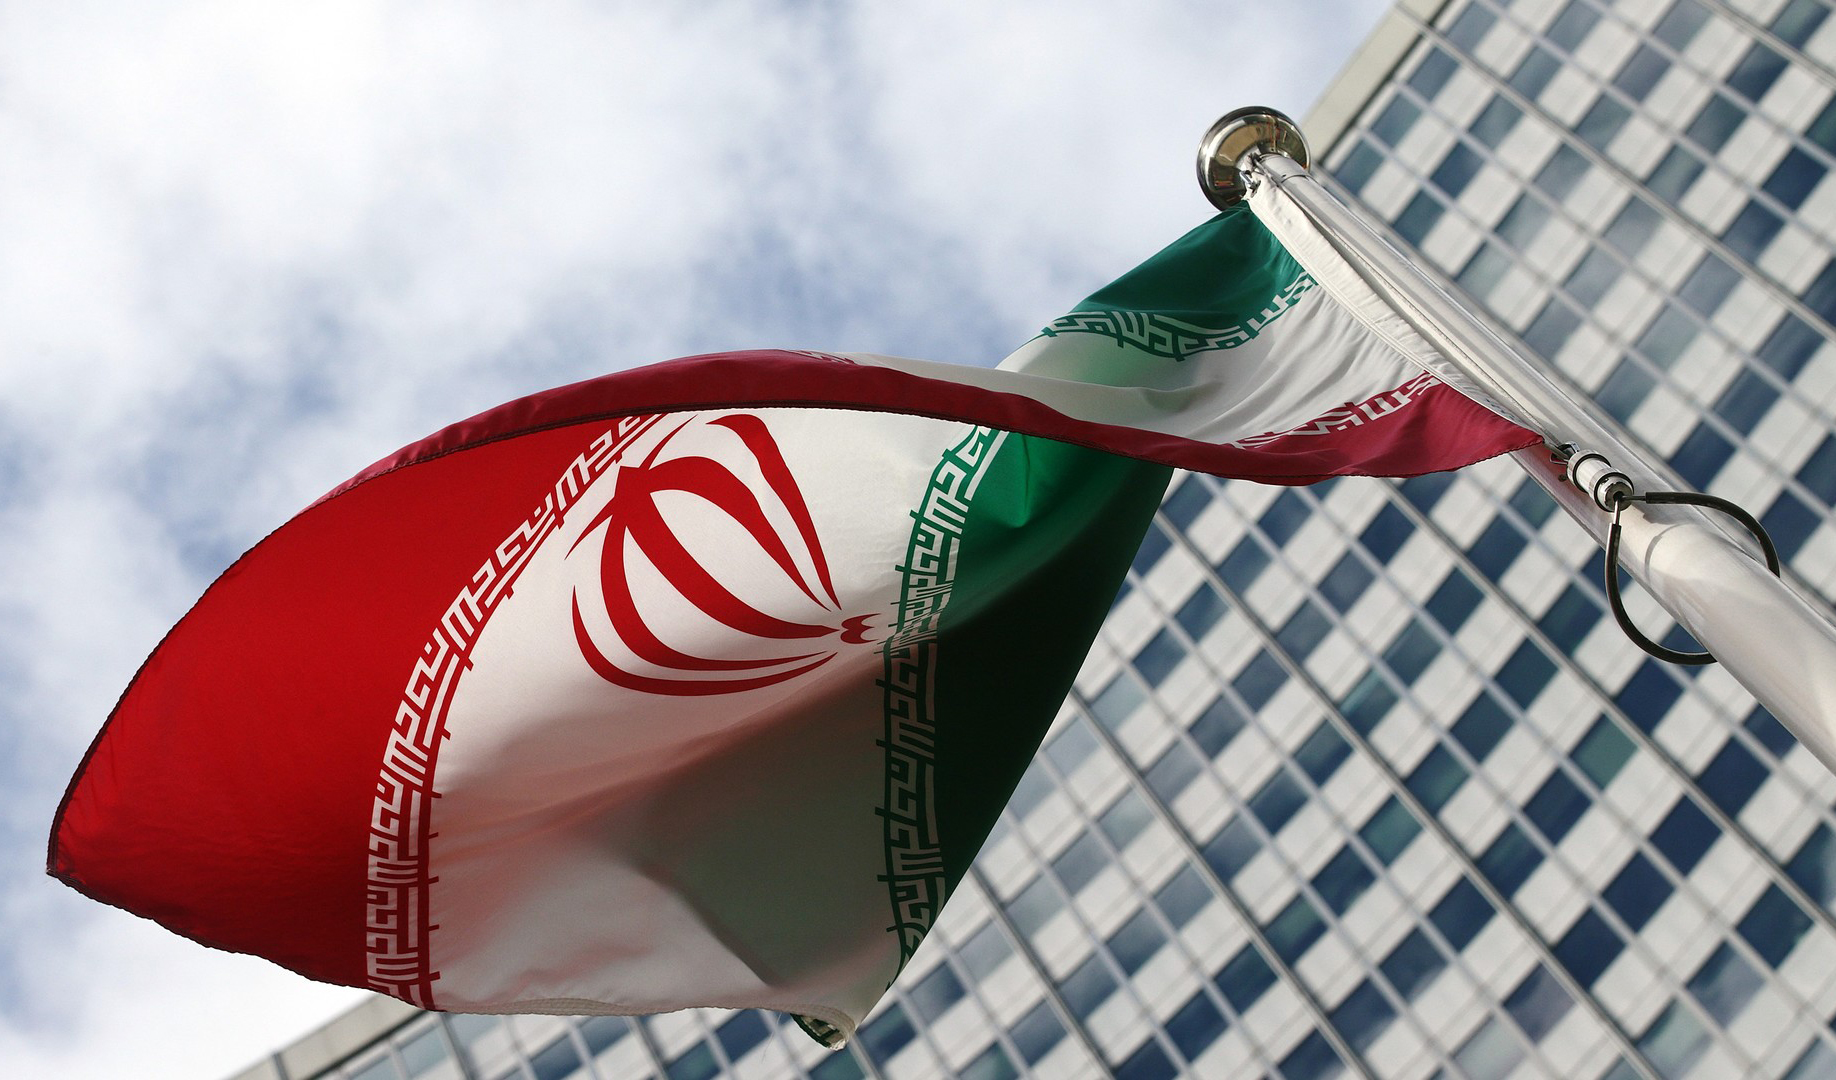 وضعیت اقتصاد ایران از دید بانک جهانی+وضعیت همسایگان